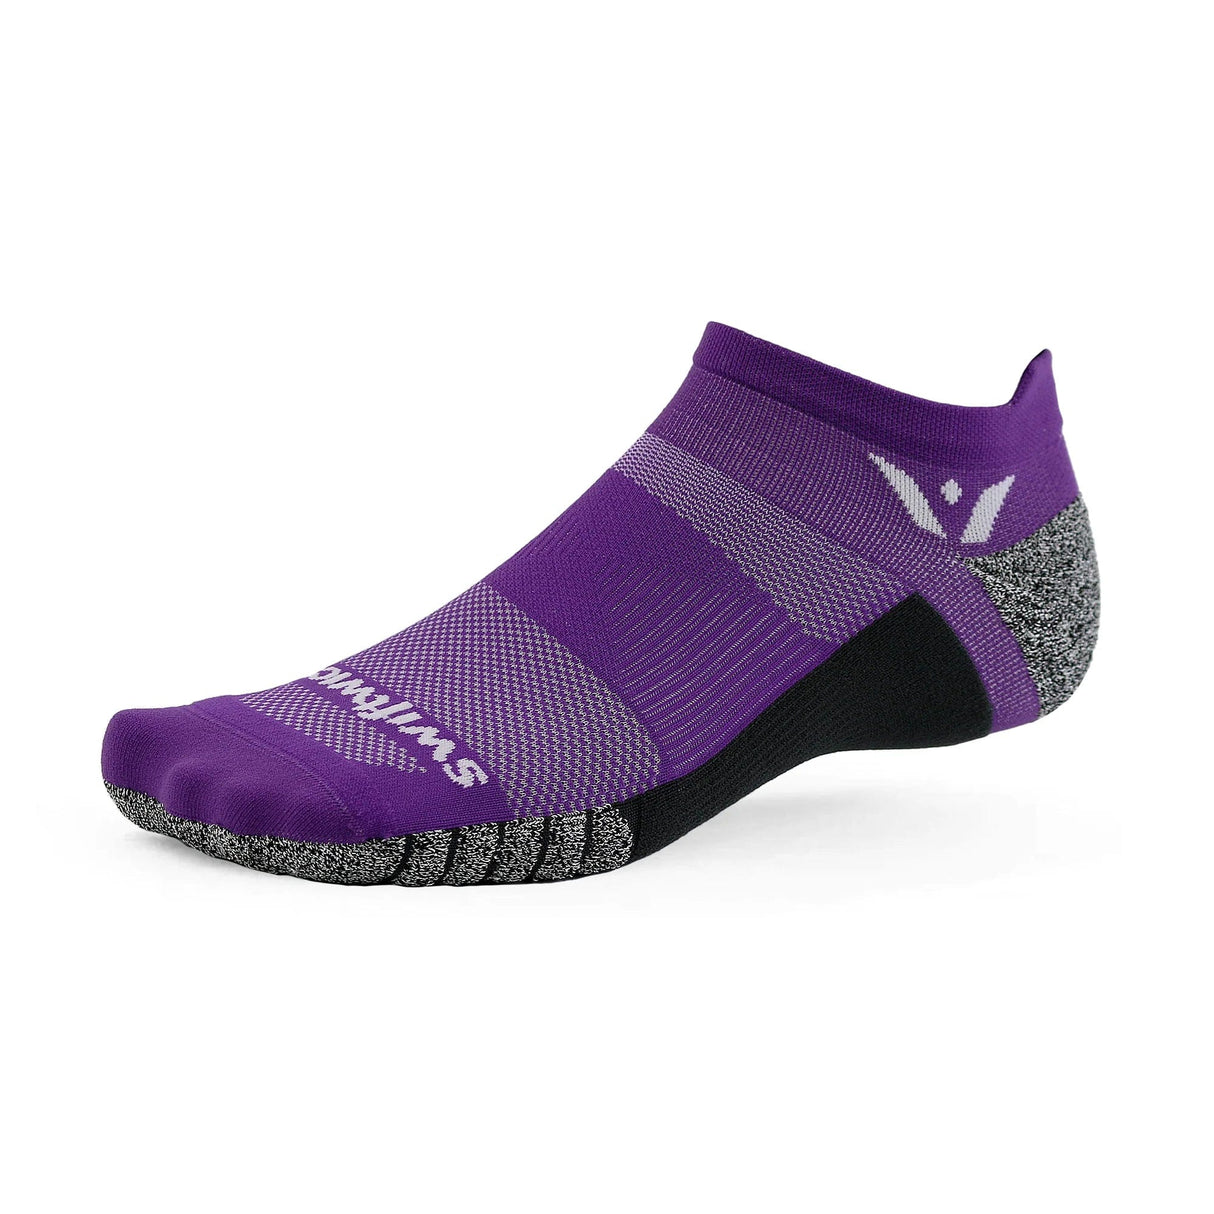 Swiftwick Flite XT Zero Tab Socks  -  Small / Purple Boost